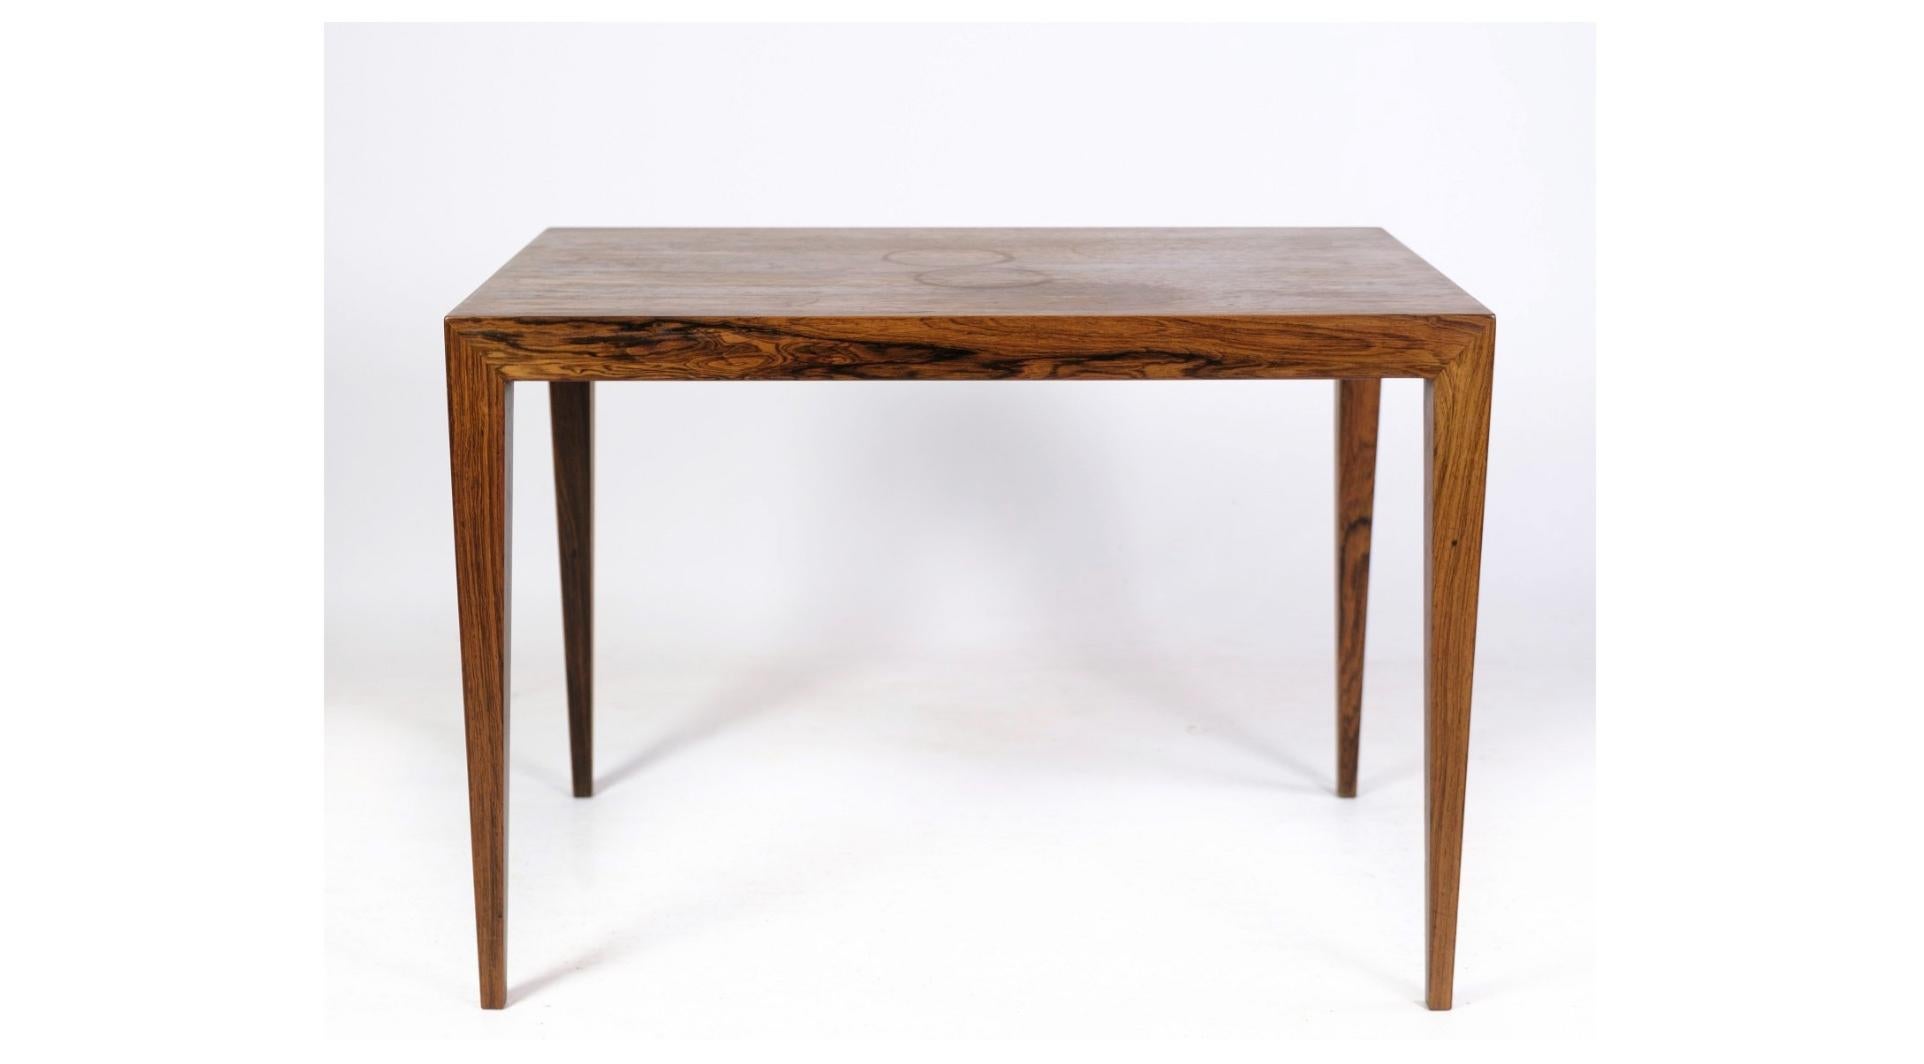 Table d'appoint en bois de rose conçue par Severin Hansen et fabriquée par la célèbre fabrique de meubles Haslev dans les années 1960. Cette pièce élégante exhale le charme intemporel et l'artisanat exceptionnel caractéristiques du design danois du